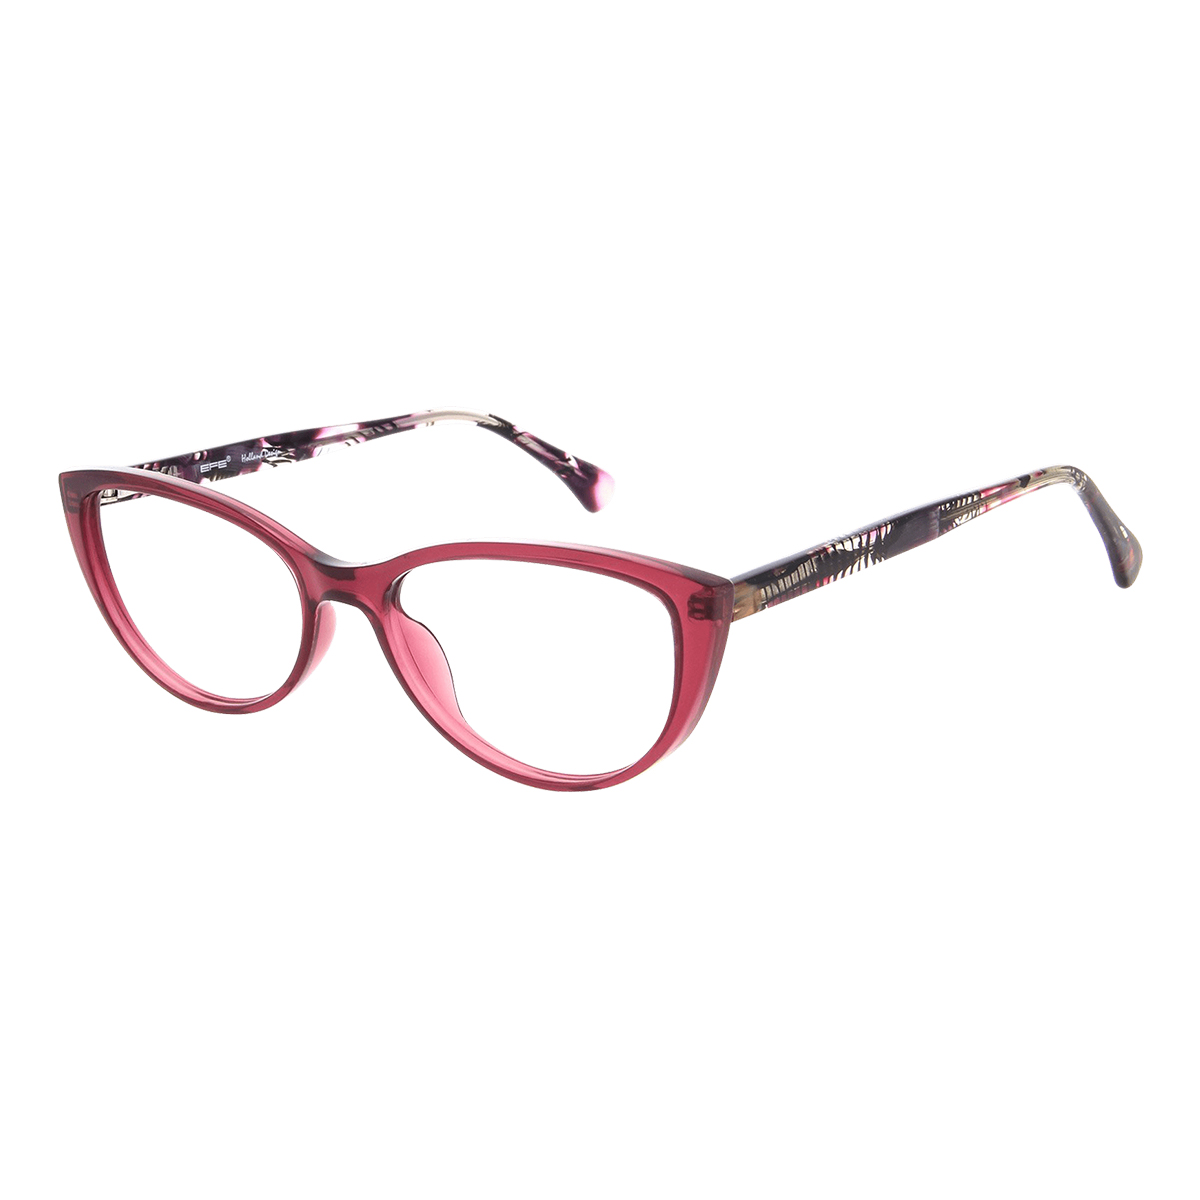 Eva - Cat-eye Red Reading Glasses for Women